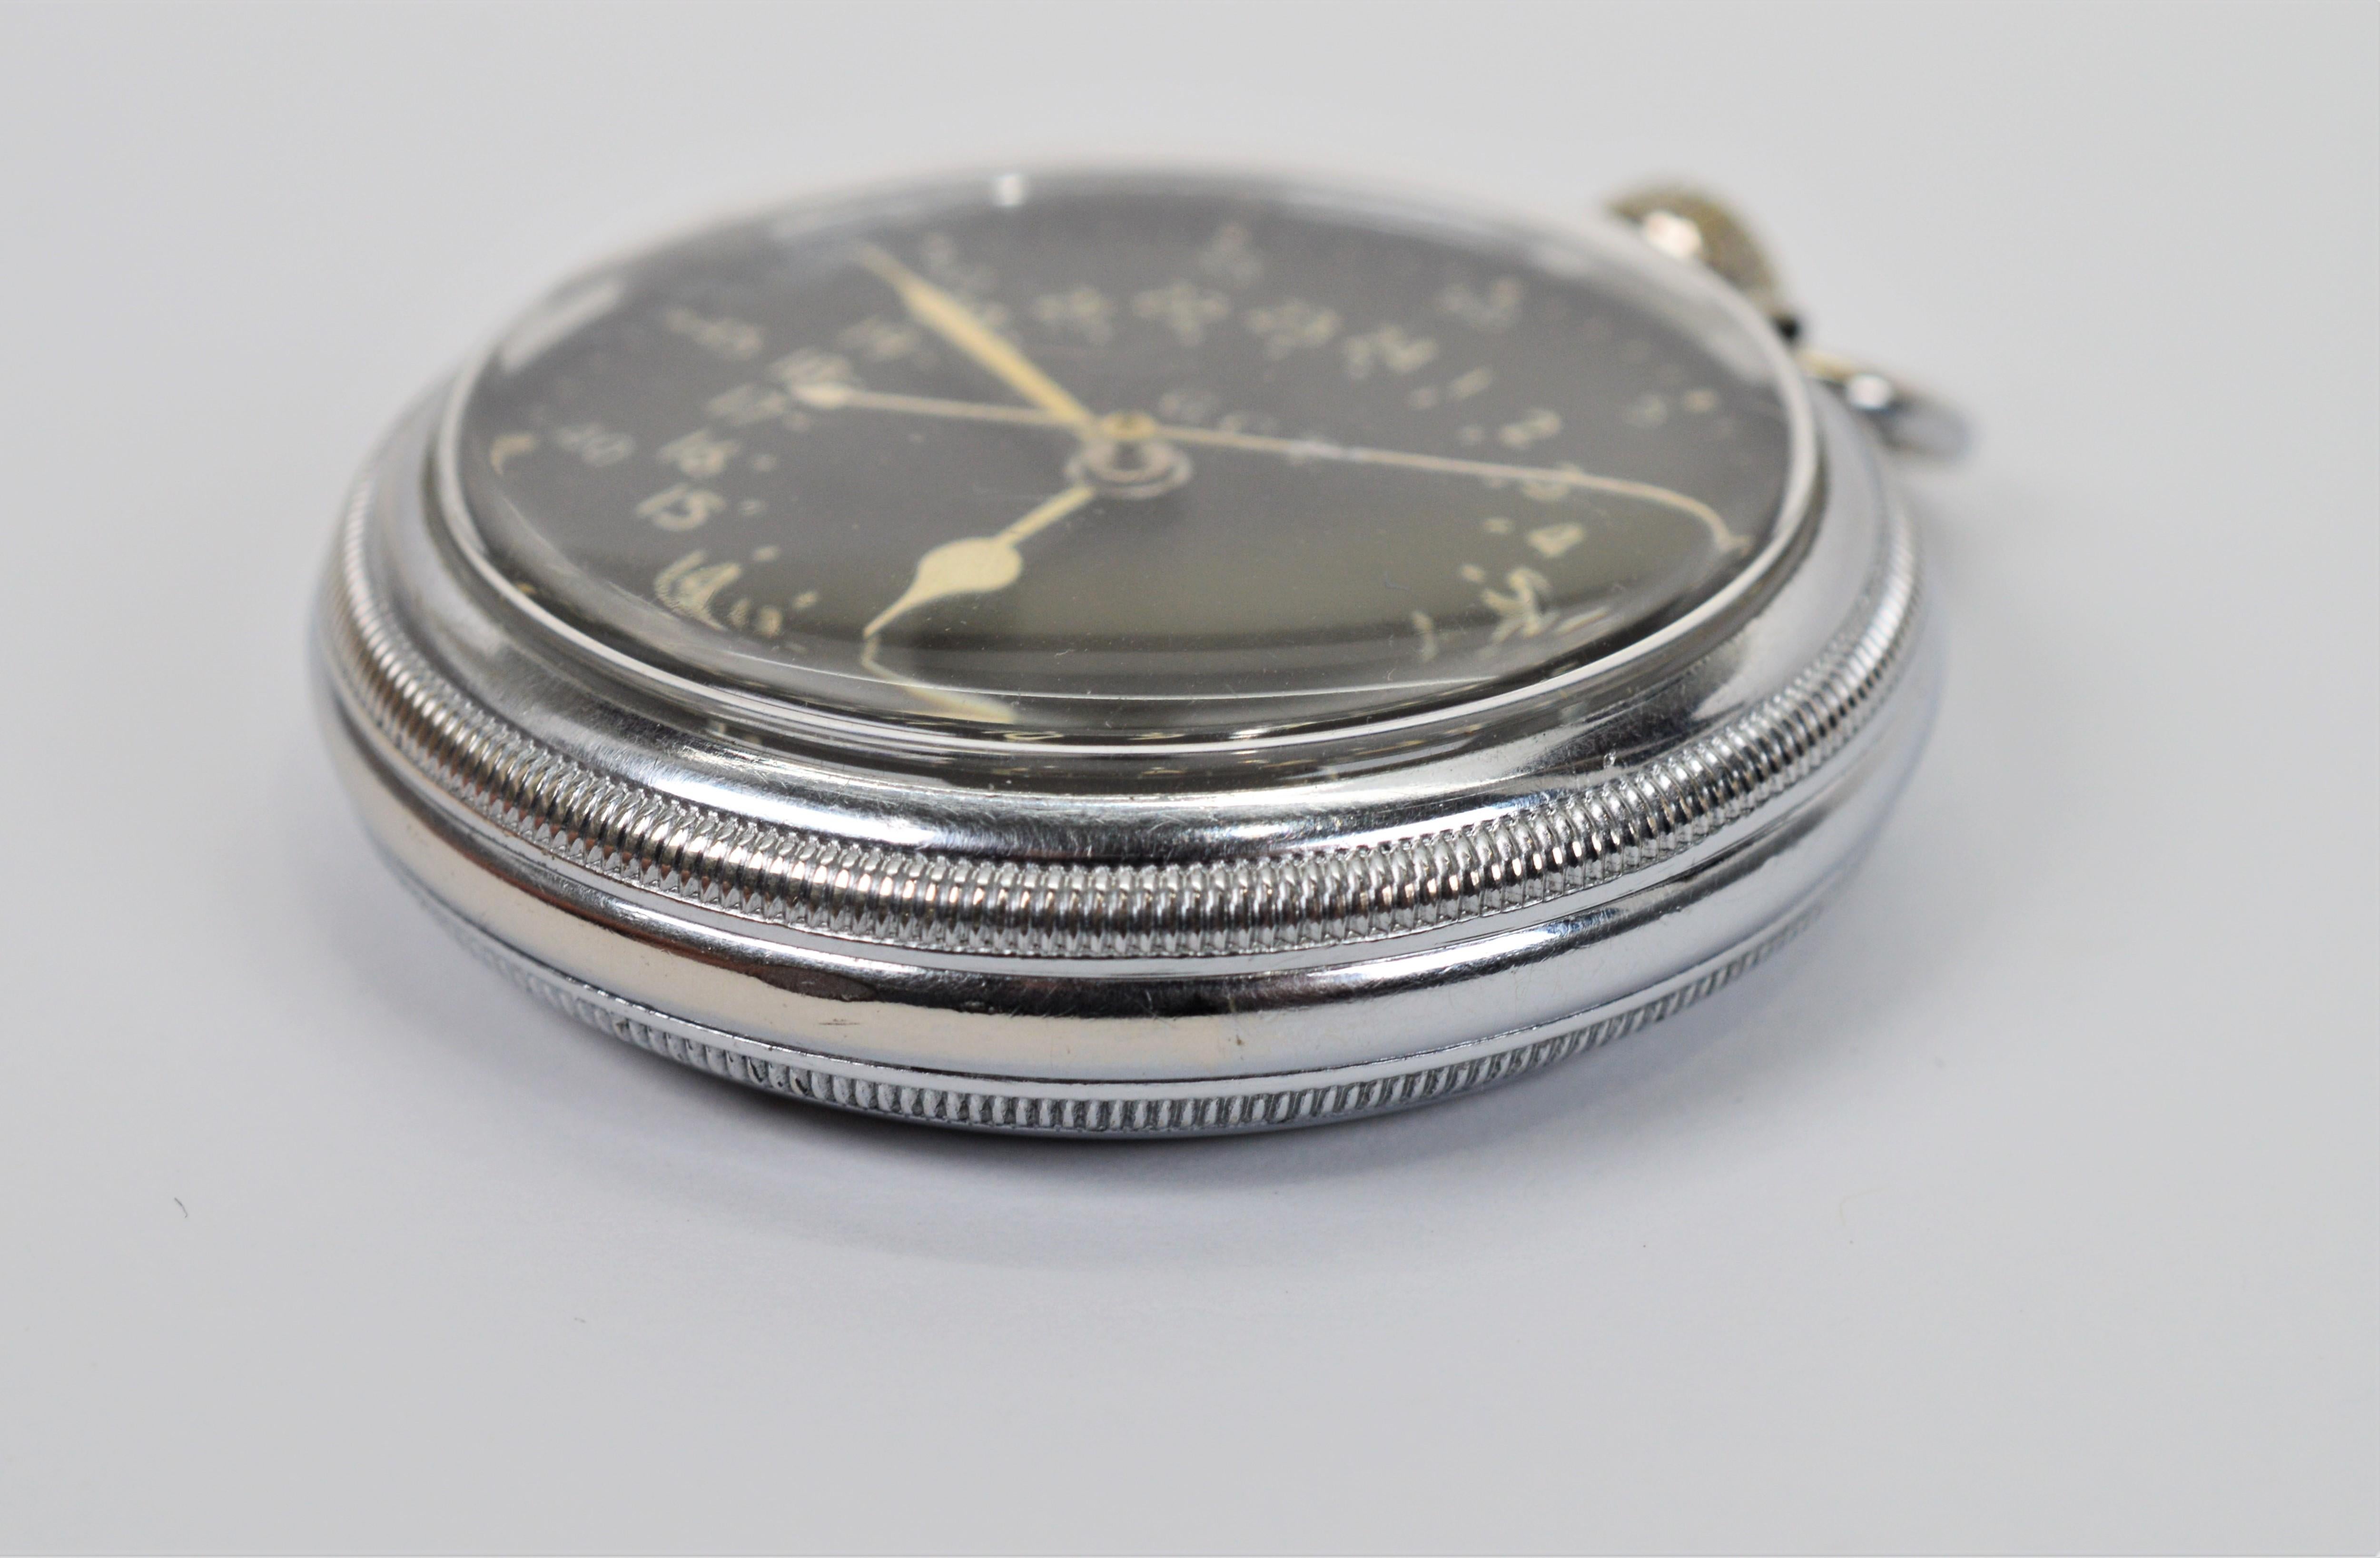 hamilton railway special pocket watch value